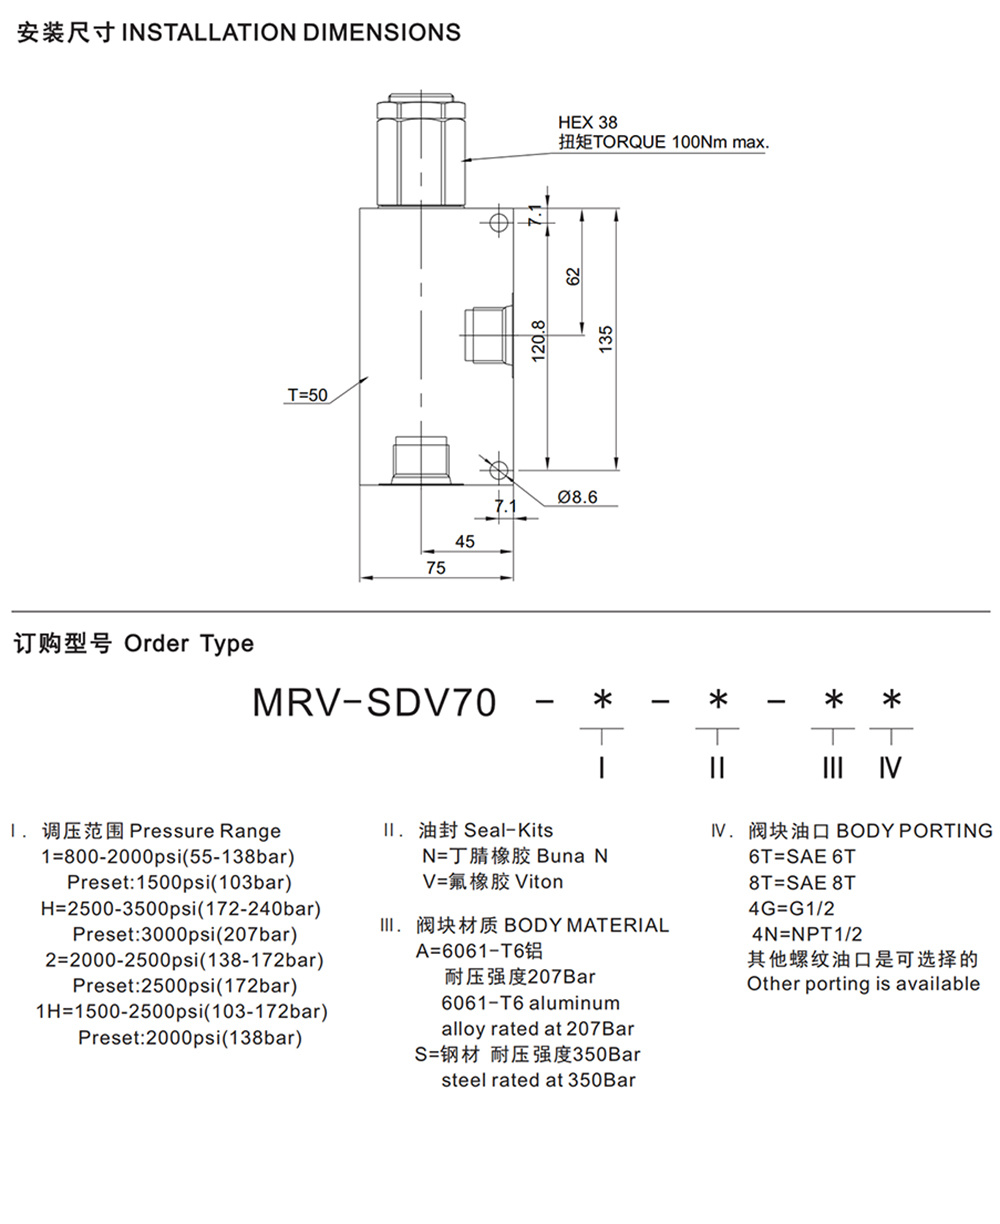 MRV-SDV70